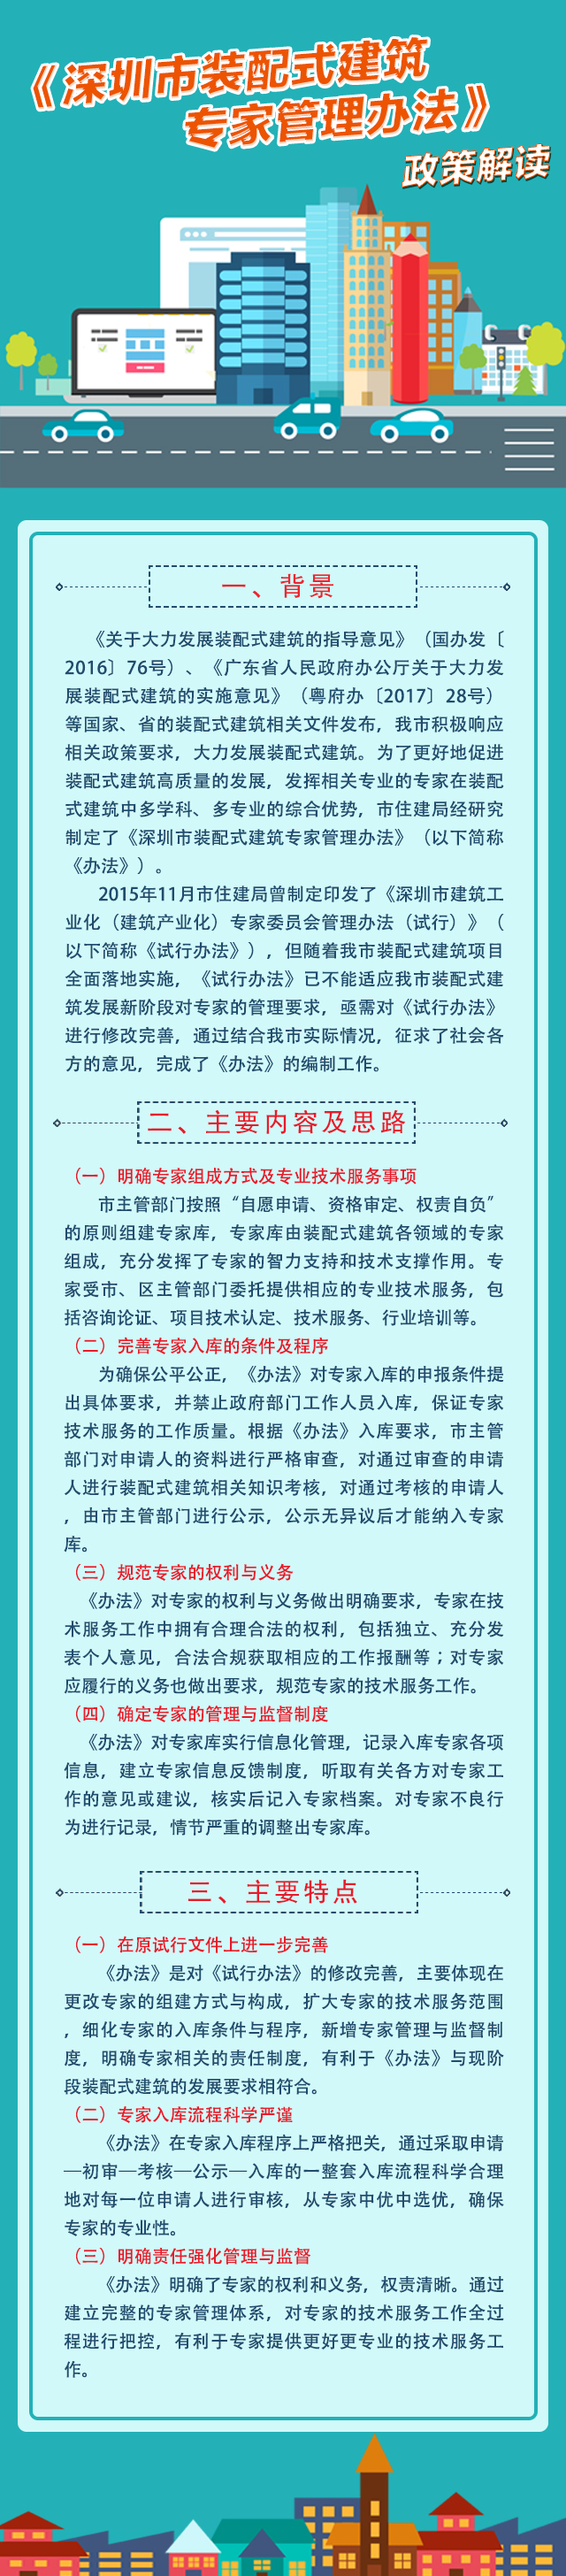 《深圳市装配式建筑专家管理办法》政策解读.jpg